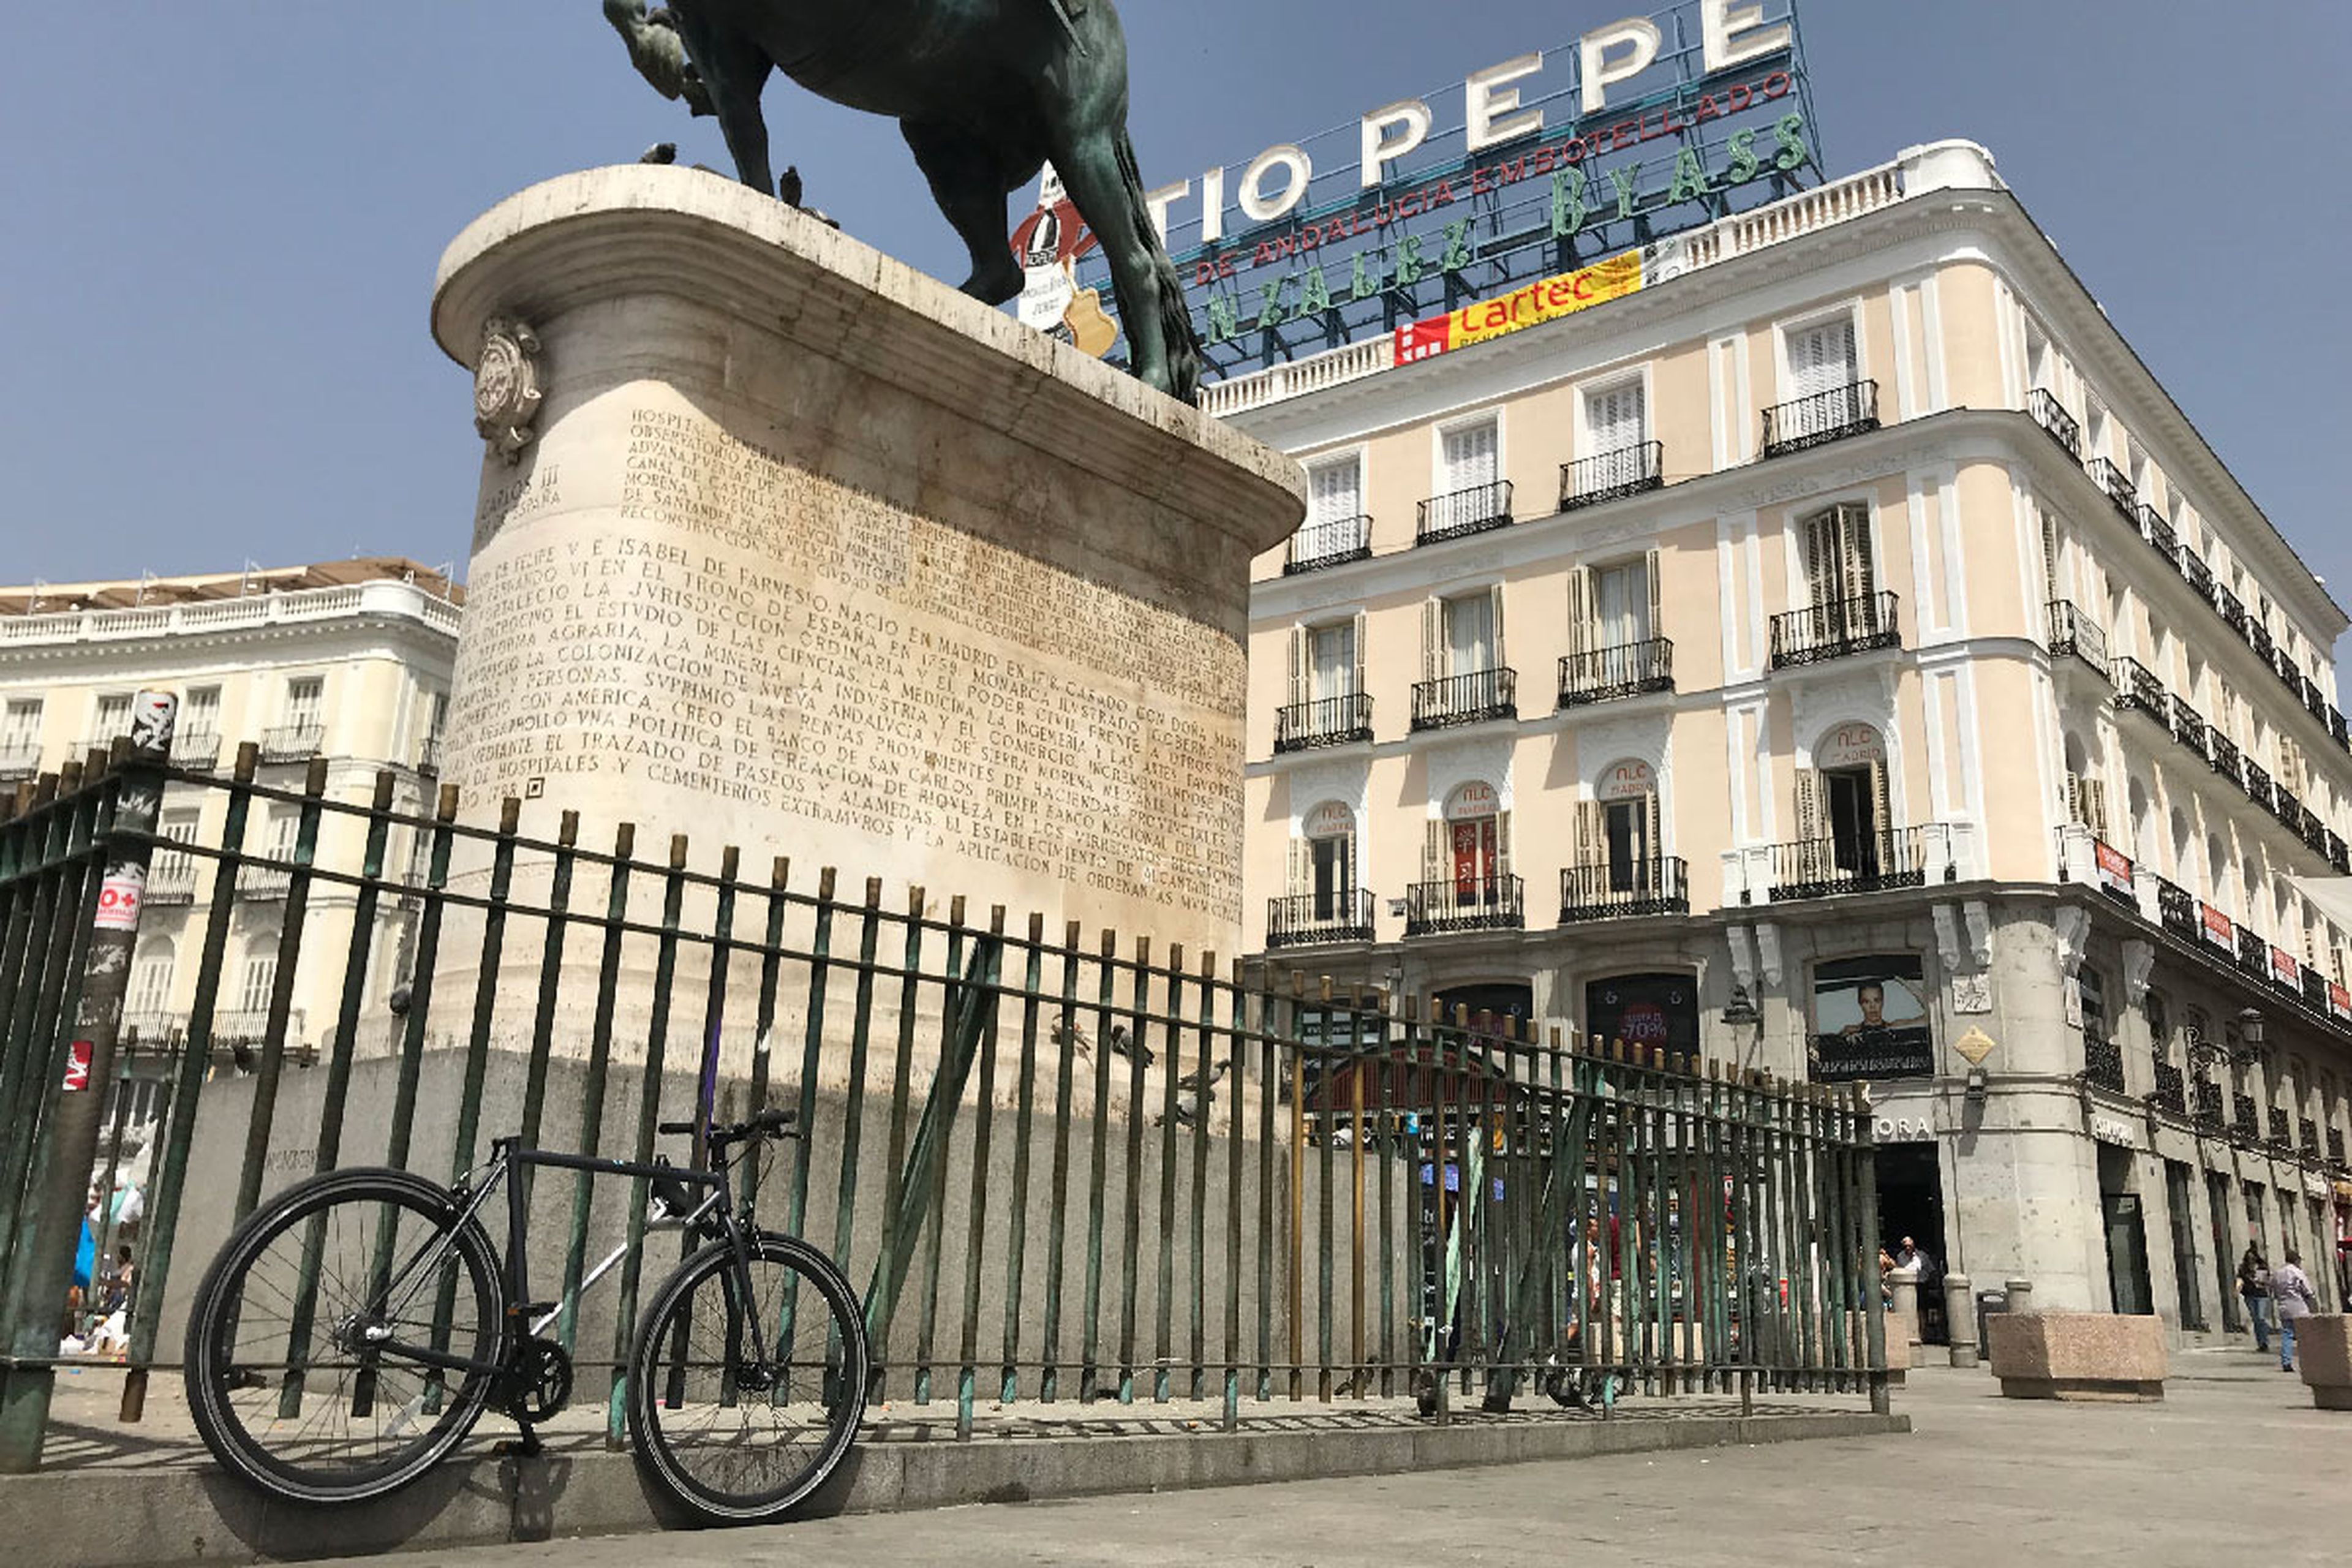 La bicicleta de Yerka, estacionada y anclada en un representativo lugar de Madrid.